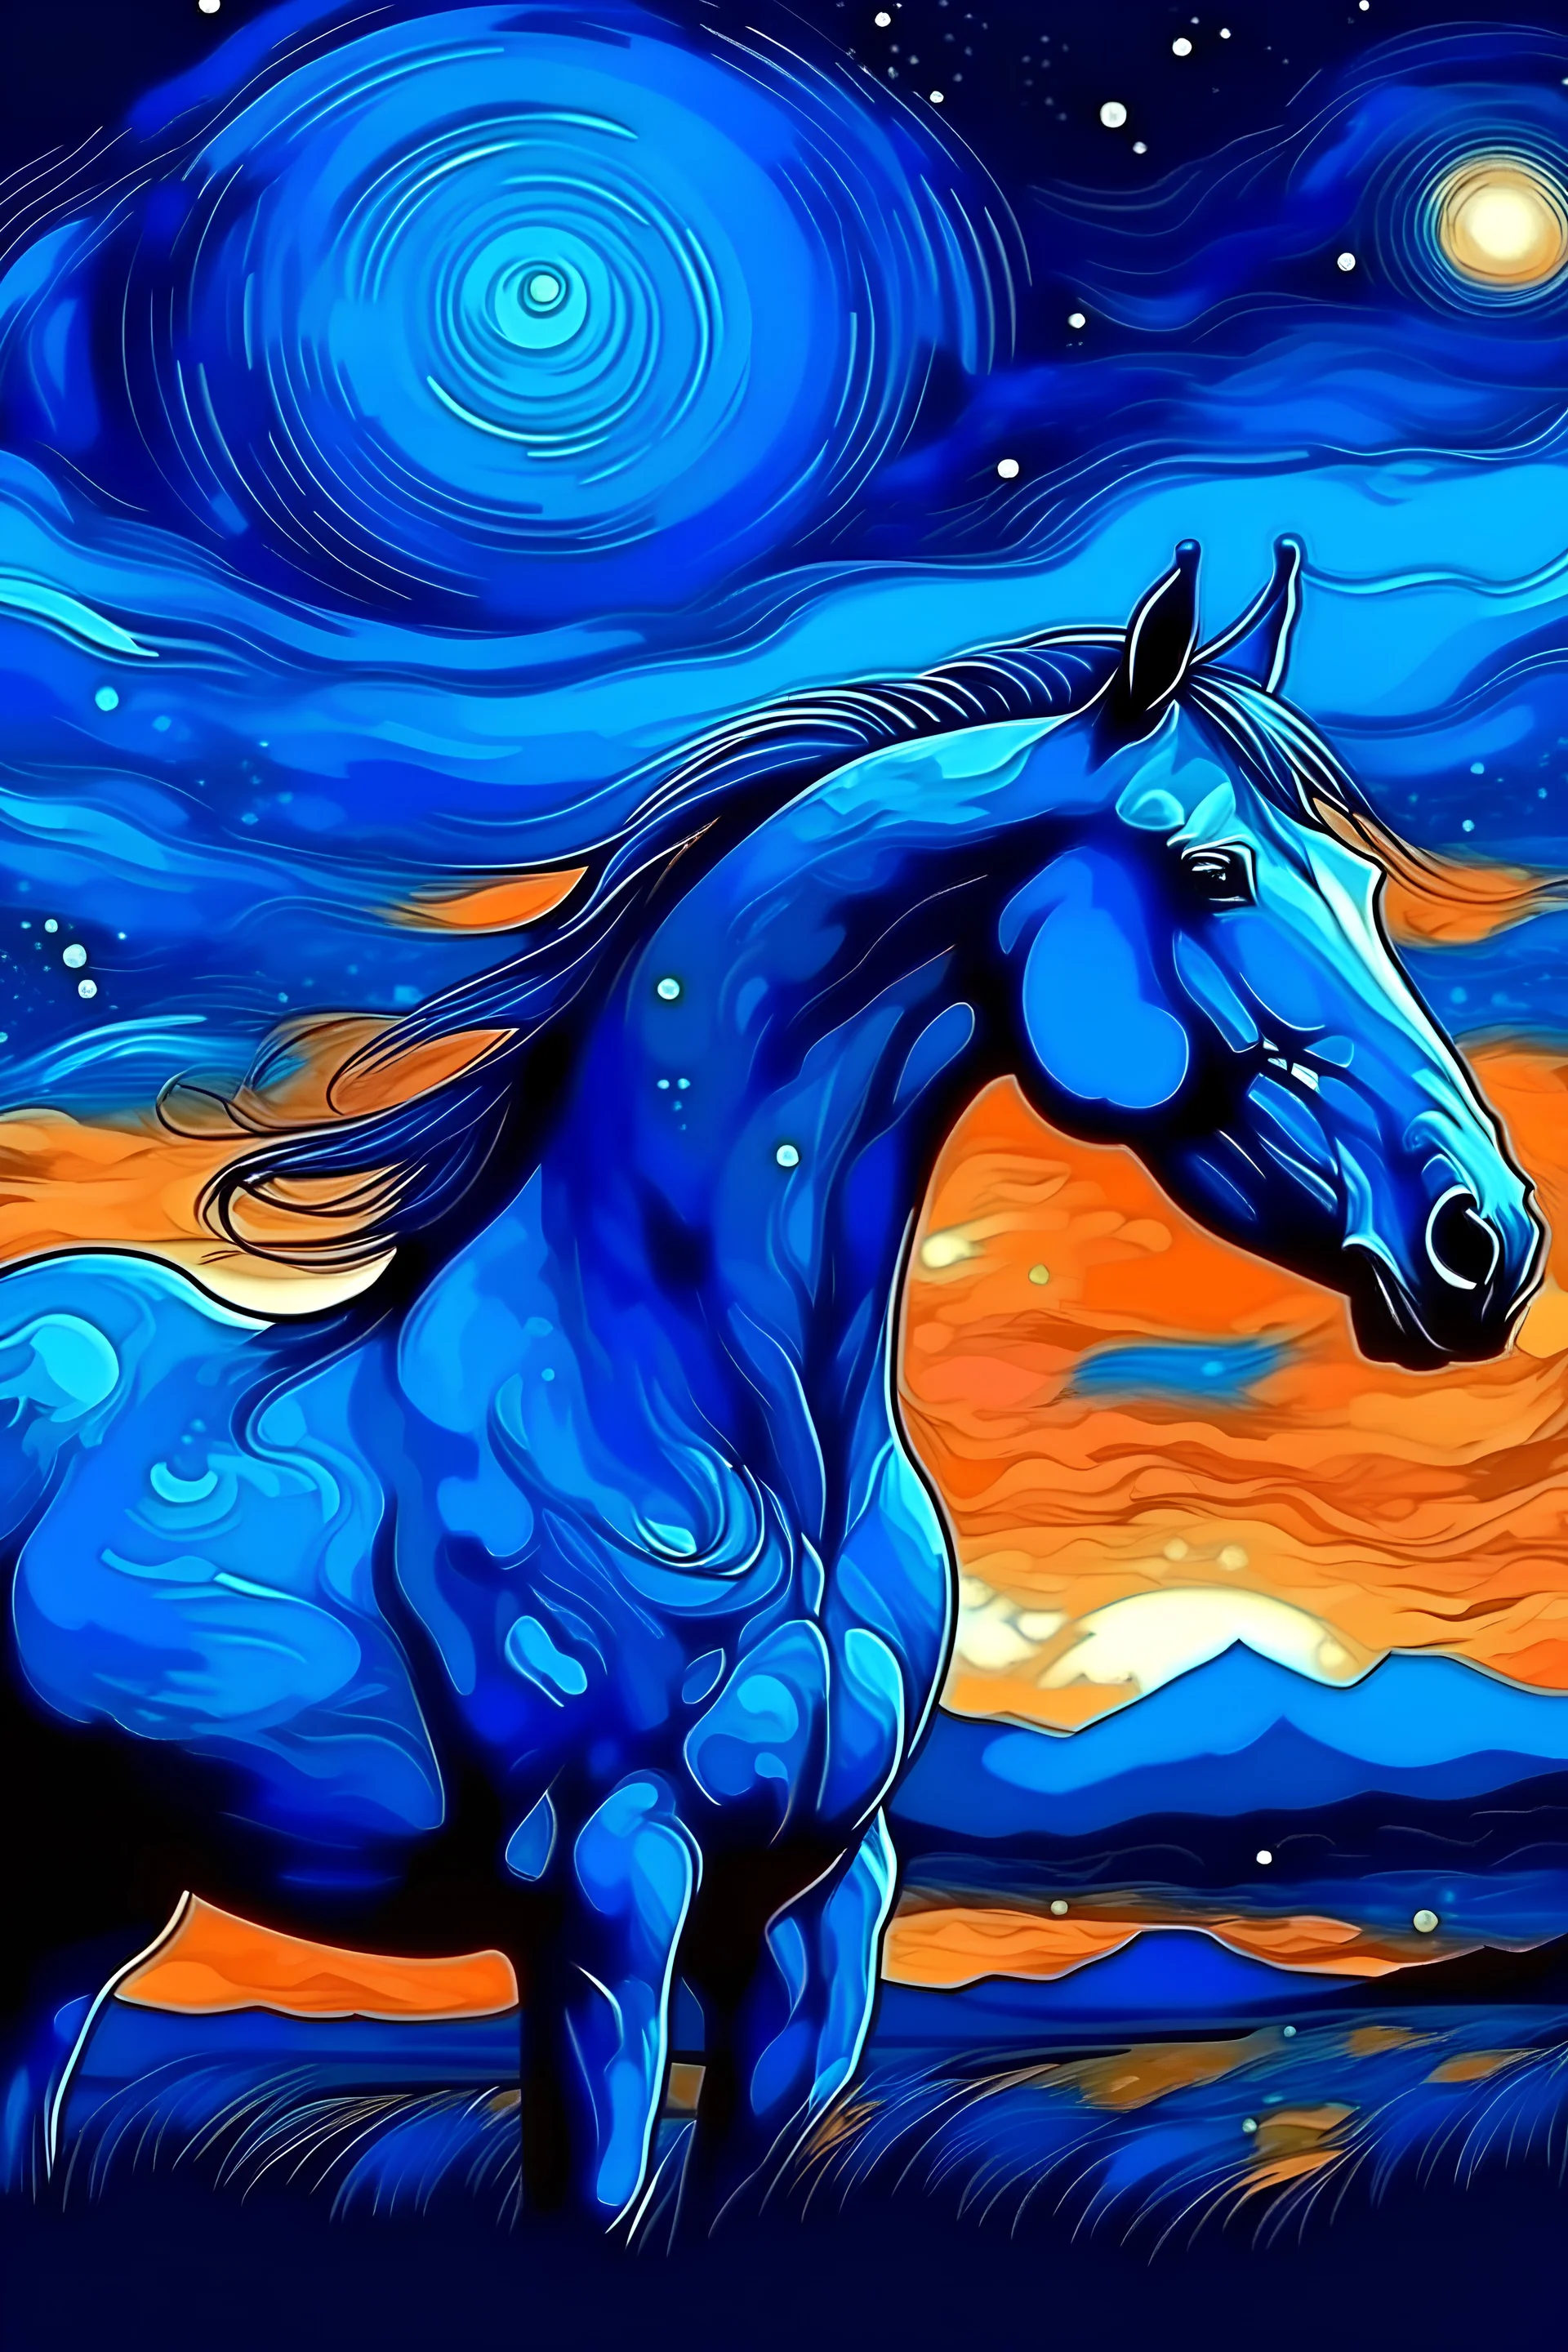 caballo azul magico con anochecer de fondo y un cielo estrellado estilo van gogh